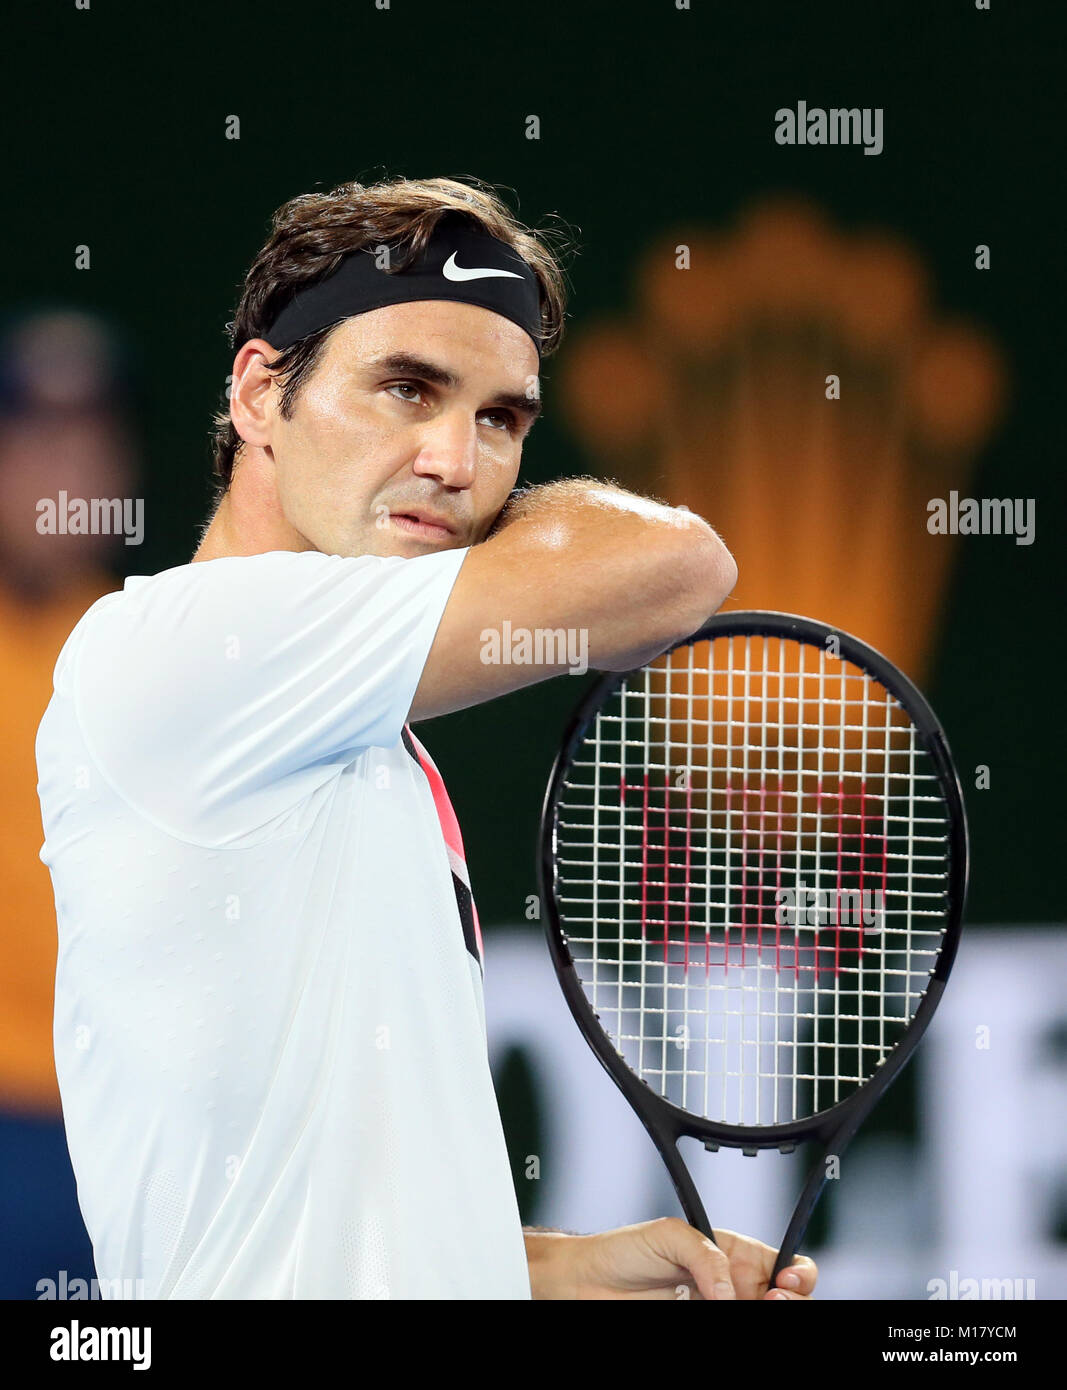 Melbourne, Australie. 28 janvier, 2018. Le suisse Roger Federer réagit au cours du dernier match du tournoi contre la Croatie, Marin Cilic à l'Open d'Australie 2018 à Melbourne, Australie, le 28 janvier 2018. Crédit : Li Peng/Xinhua/Alamy Live News Banque D'Images